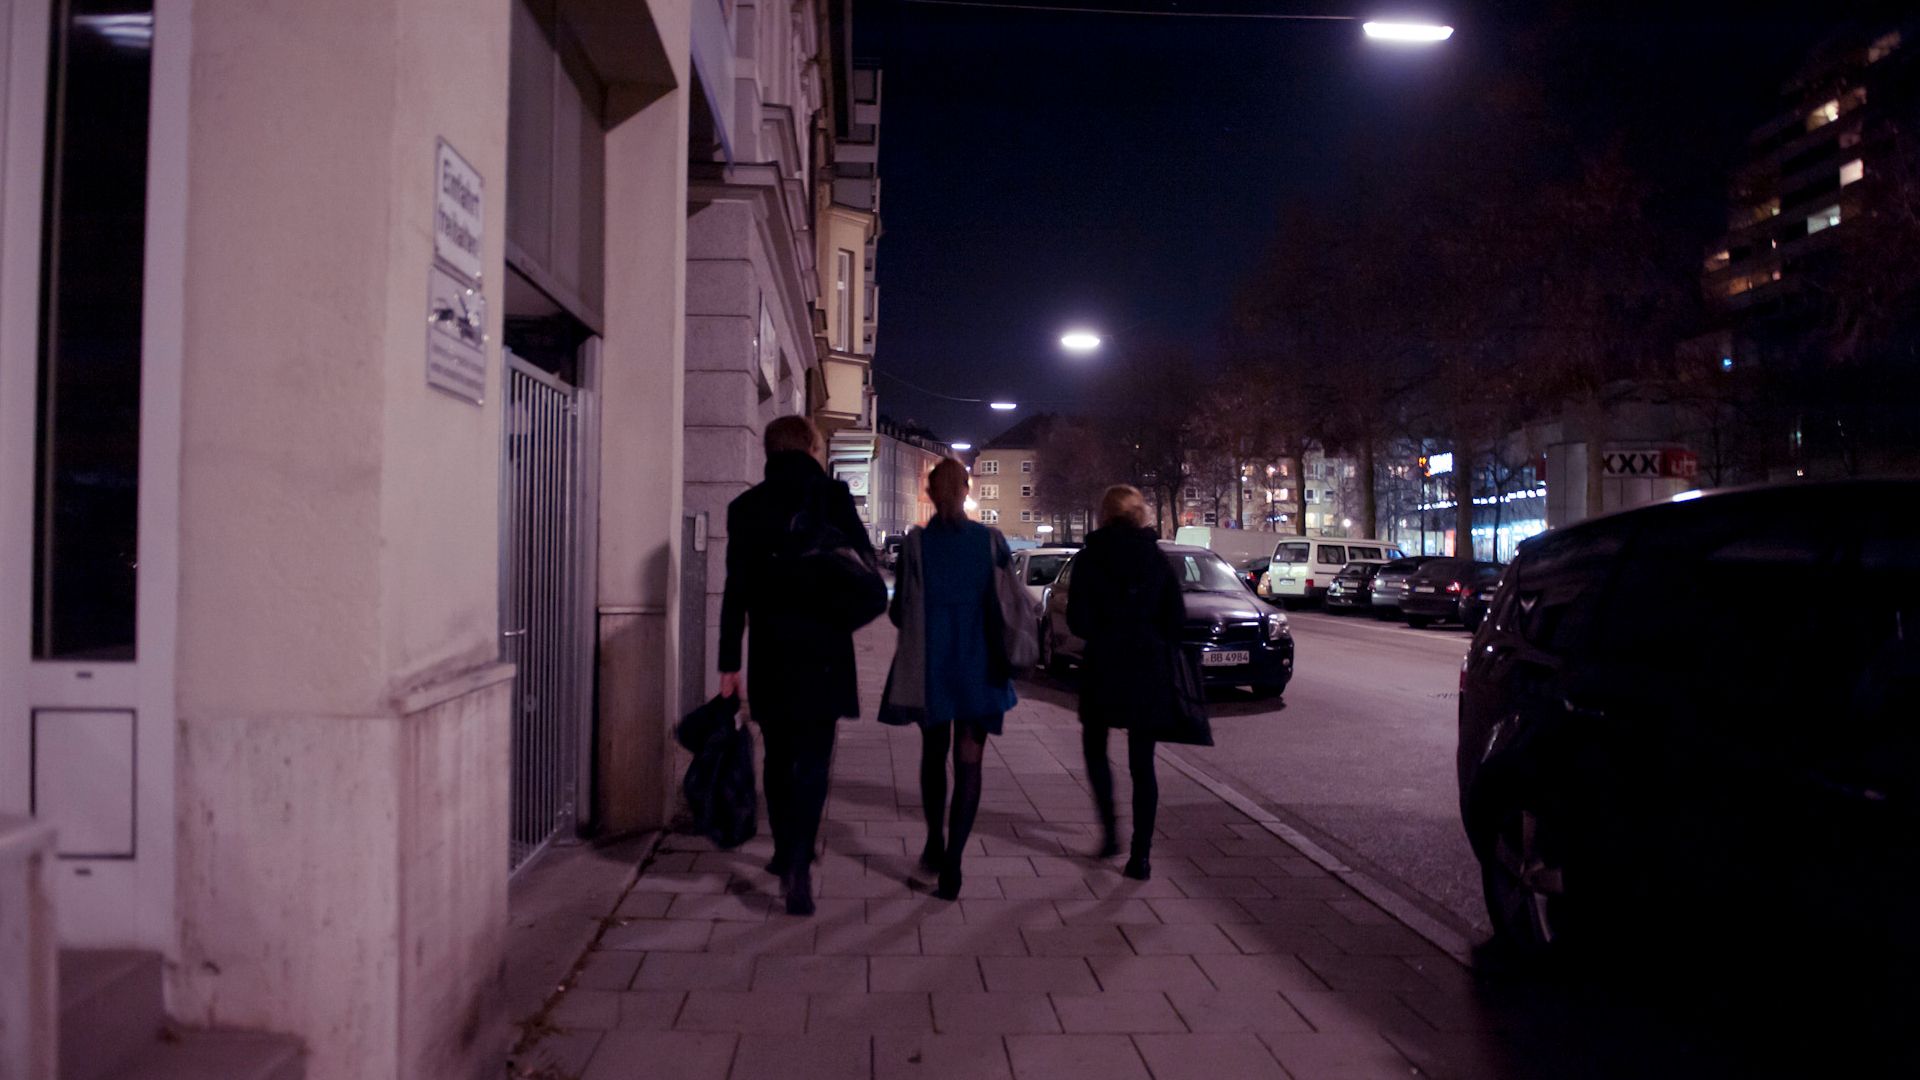 People walking in the dark on a sidewalk